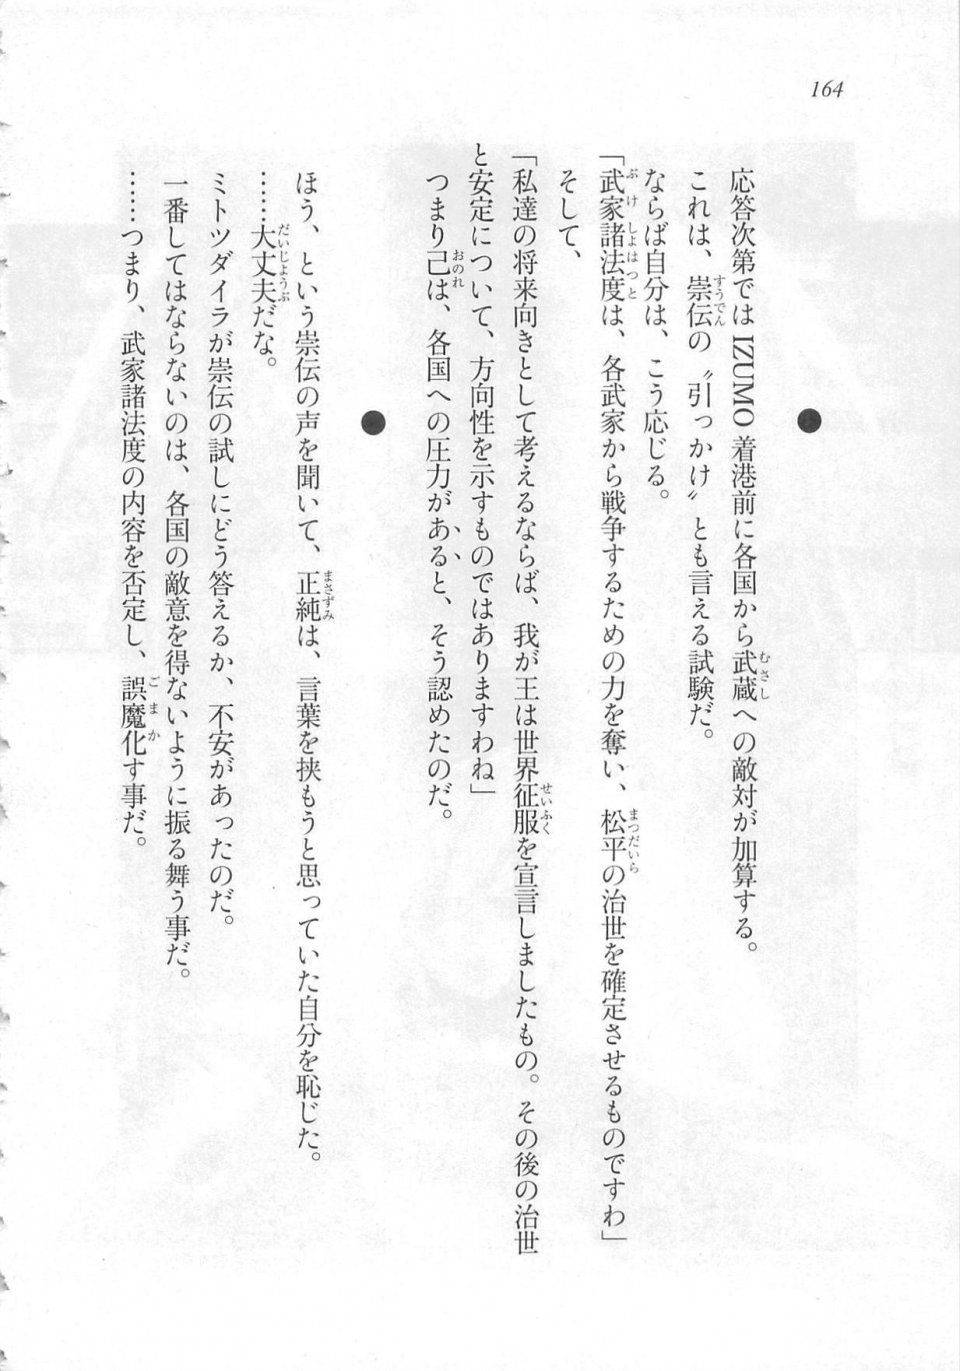 Kyoukai Senjou no Horizon LN Sidestory Vol 3 - Photo #168